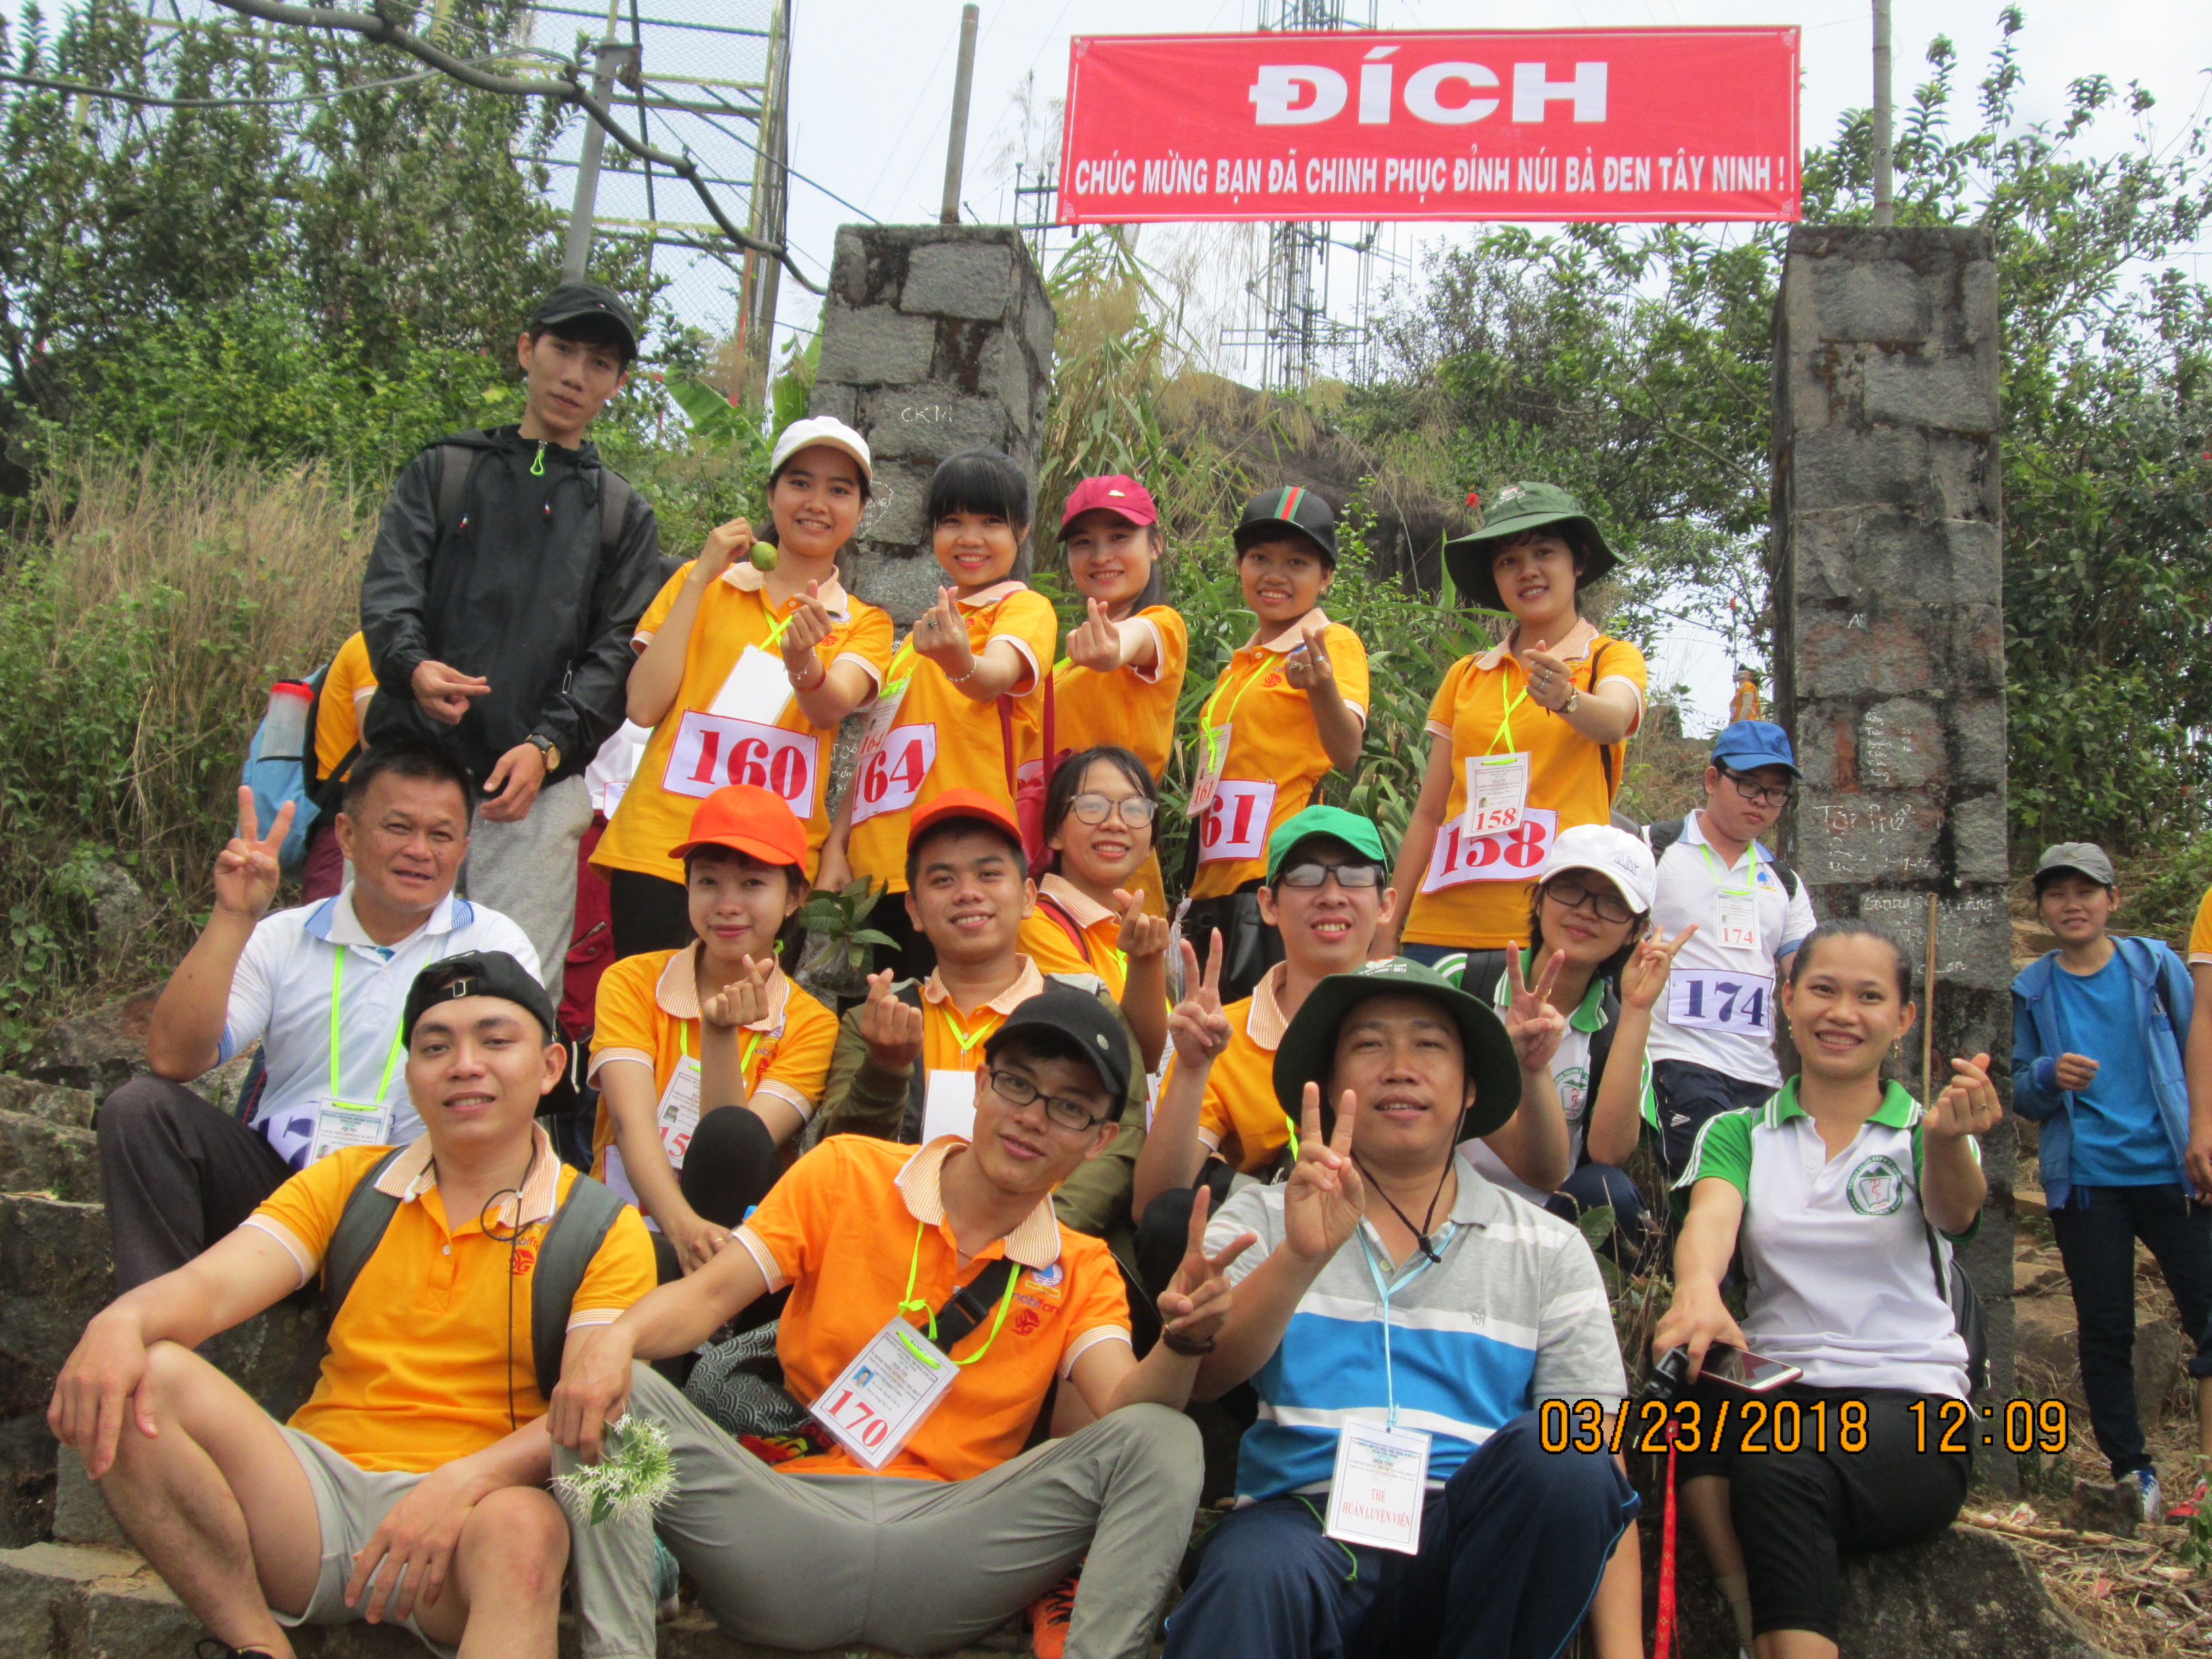 Đoàn trường Trung cấp Y tế Tây Ninh "Chinh phục đỉnh núi Bà Đen" lần thứ XXIII năm 2018